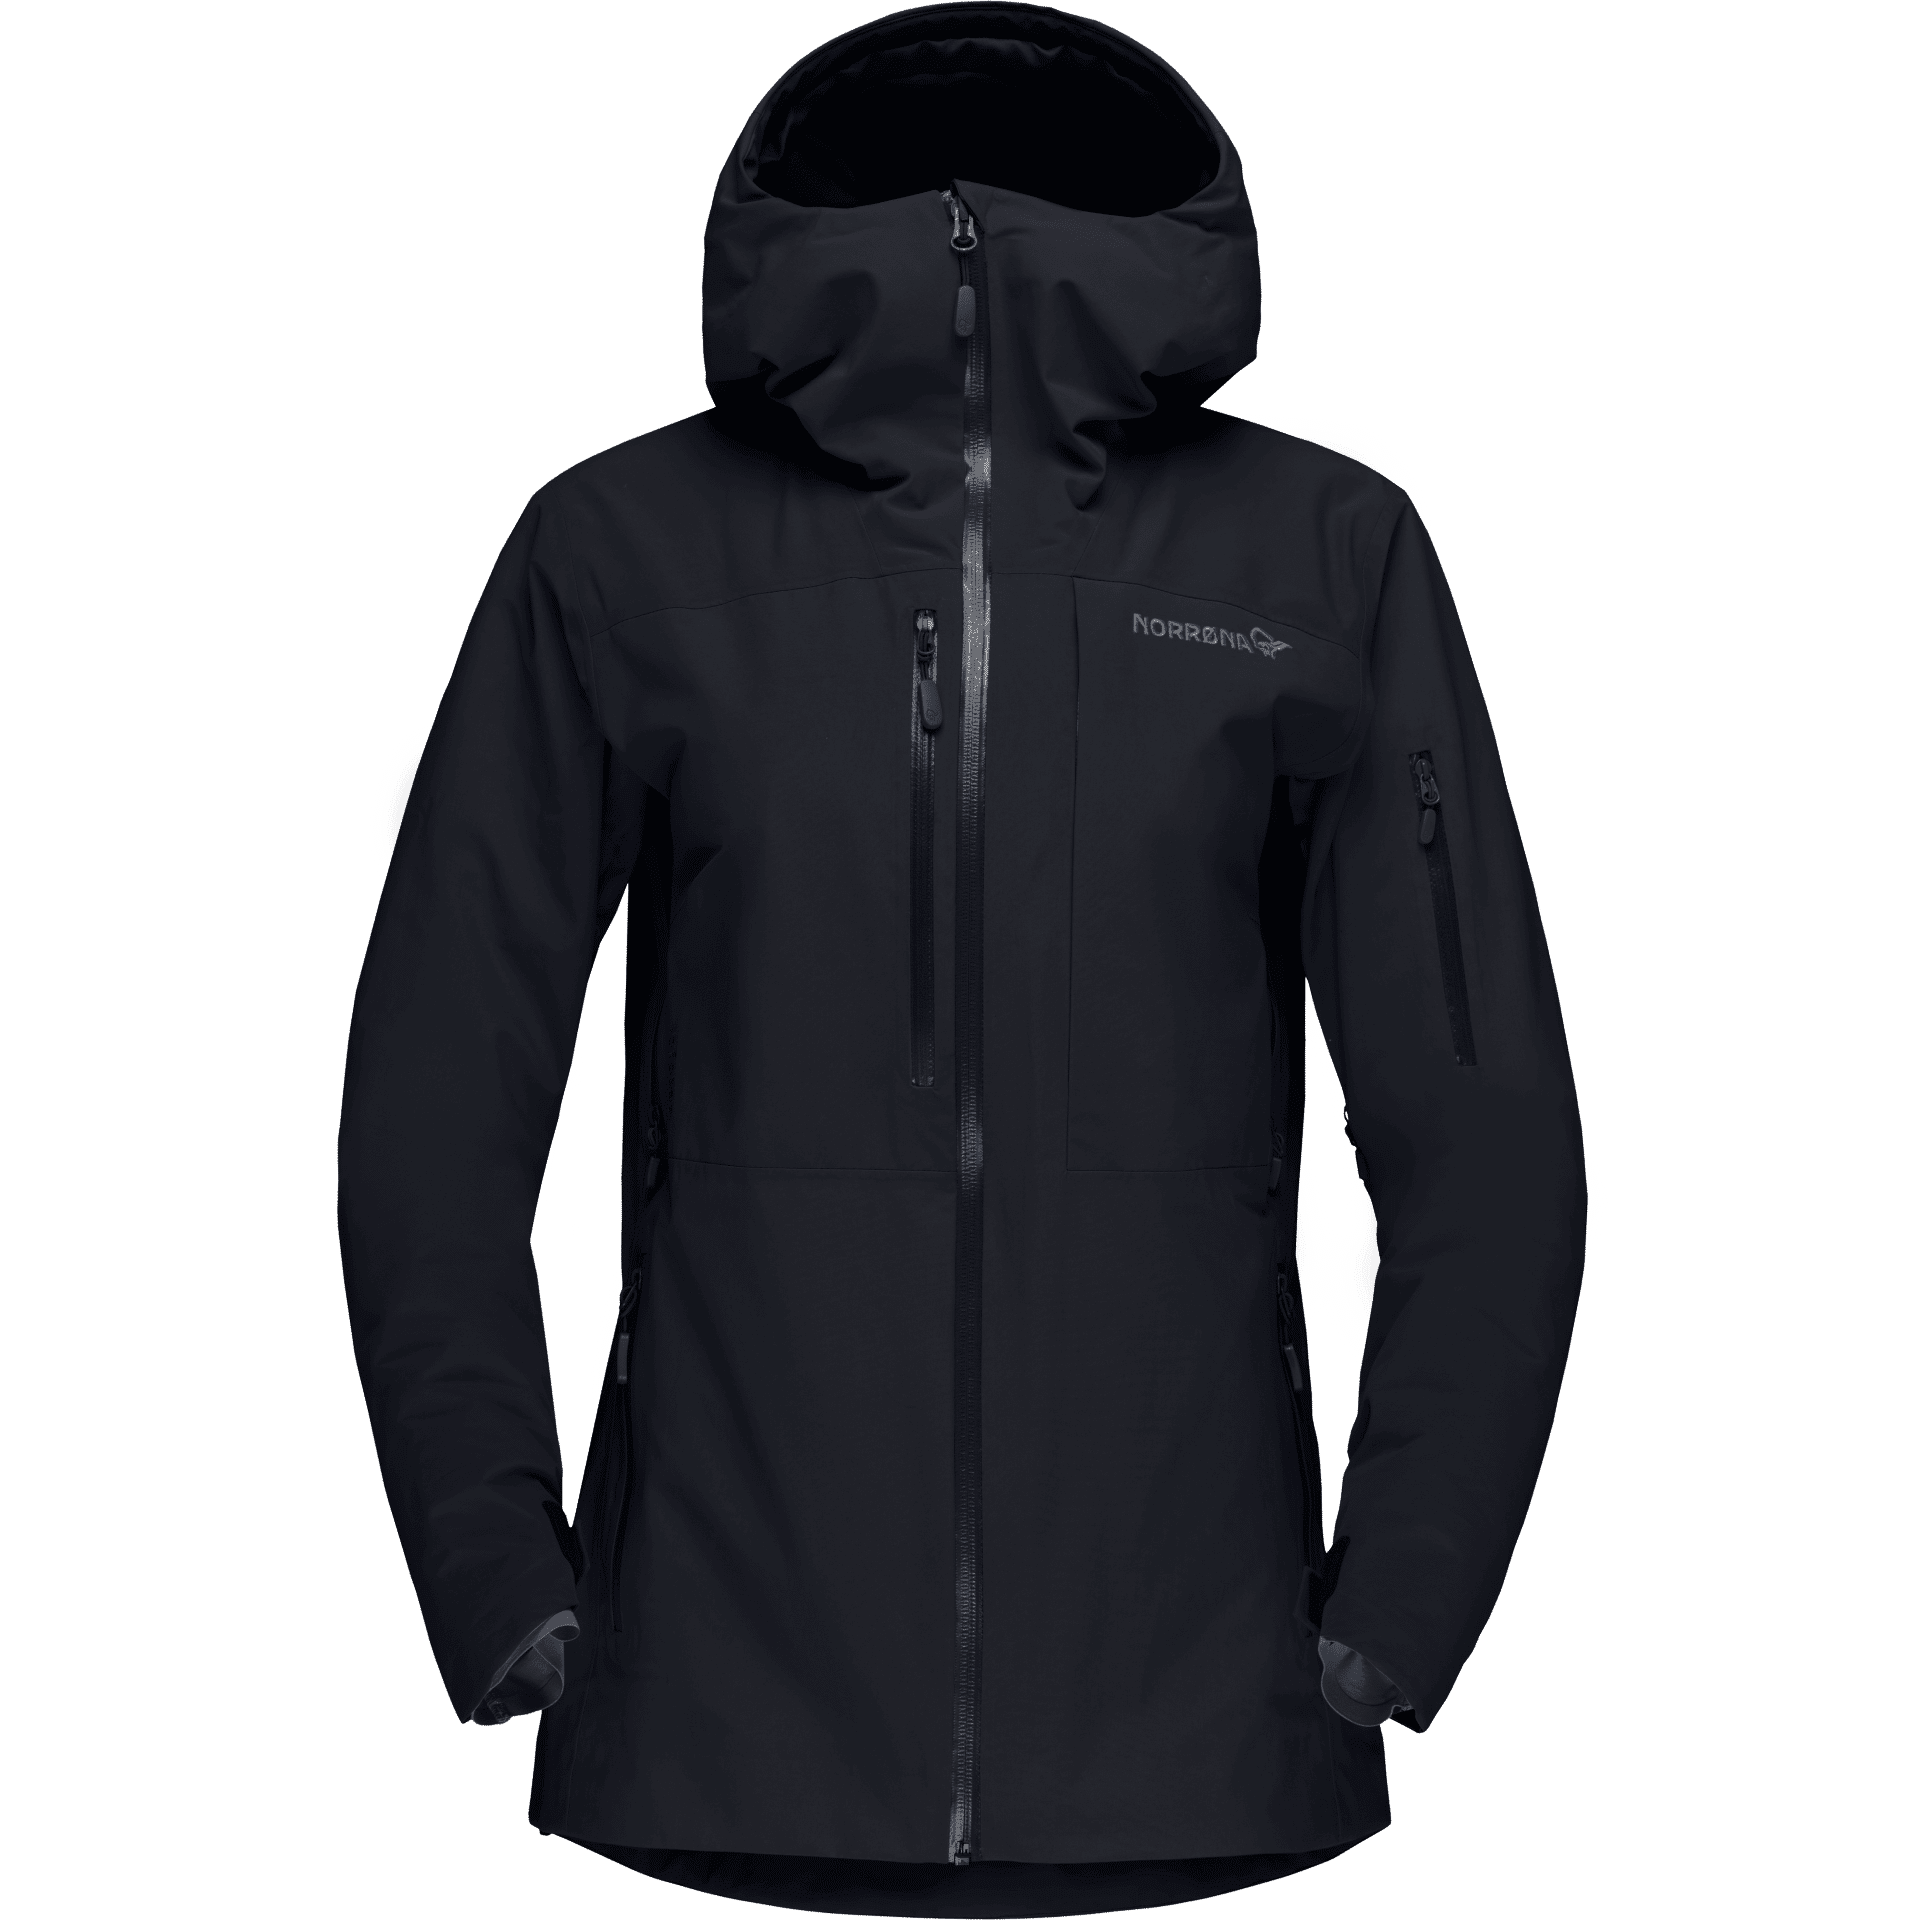 Norrøna - Lofoten Gore-Tex  Insulated Jacket - Giacca da sci - Donna